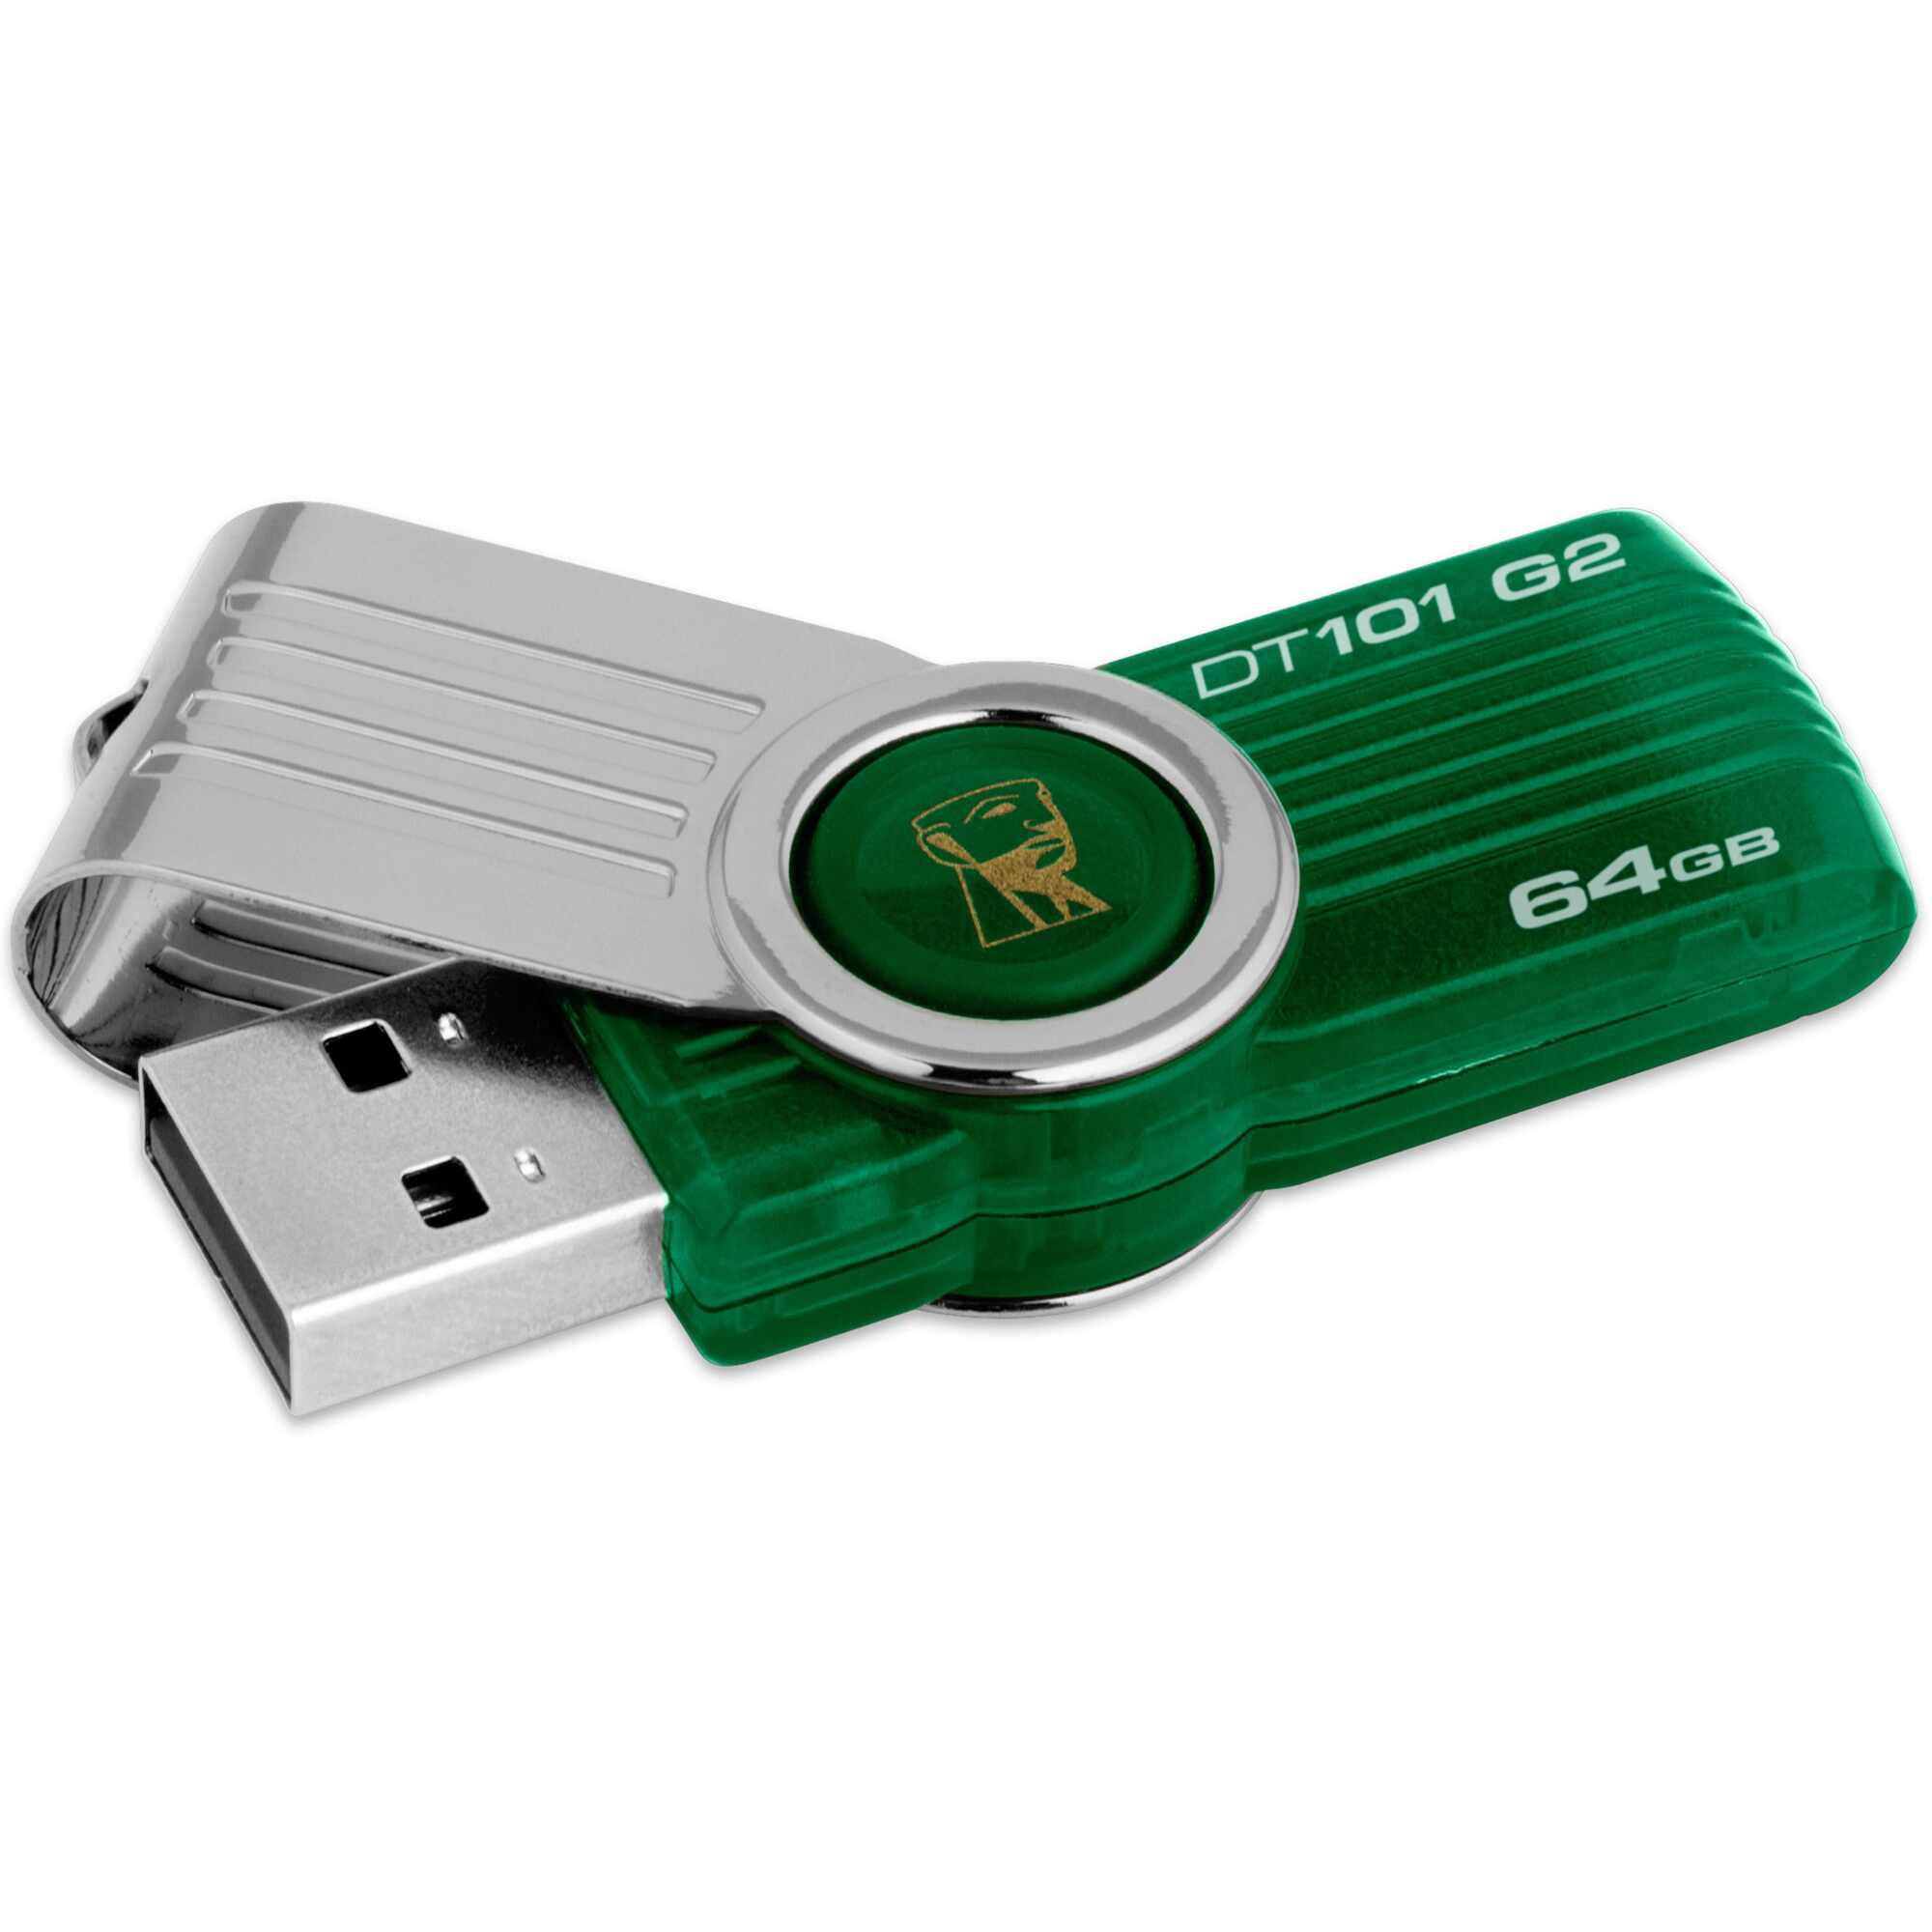 Memorie USB Kingston DataTraveler 101, 64GB, Verde